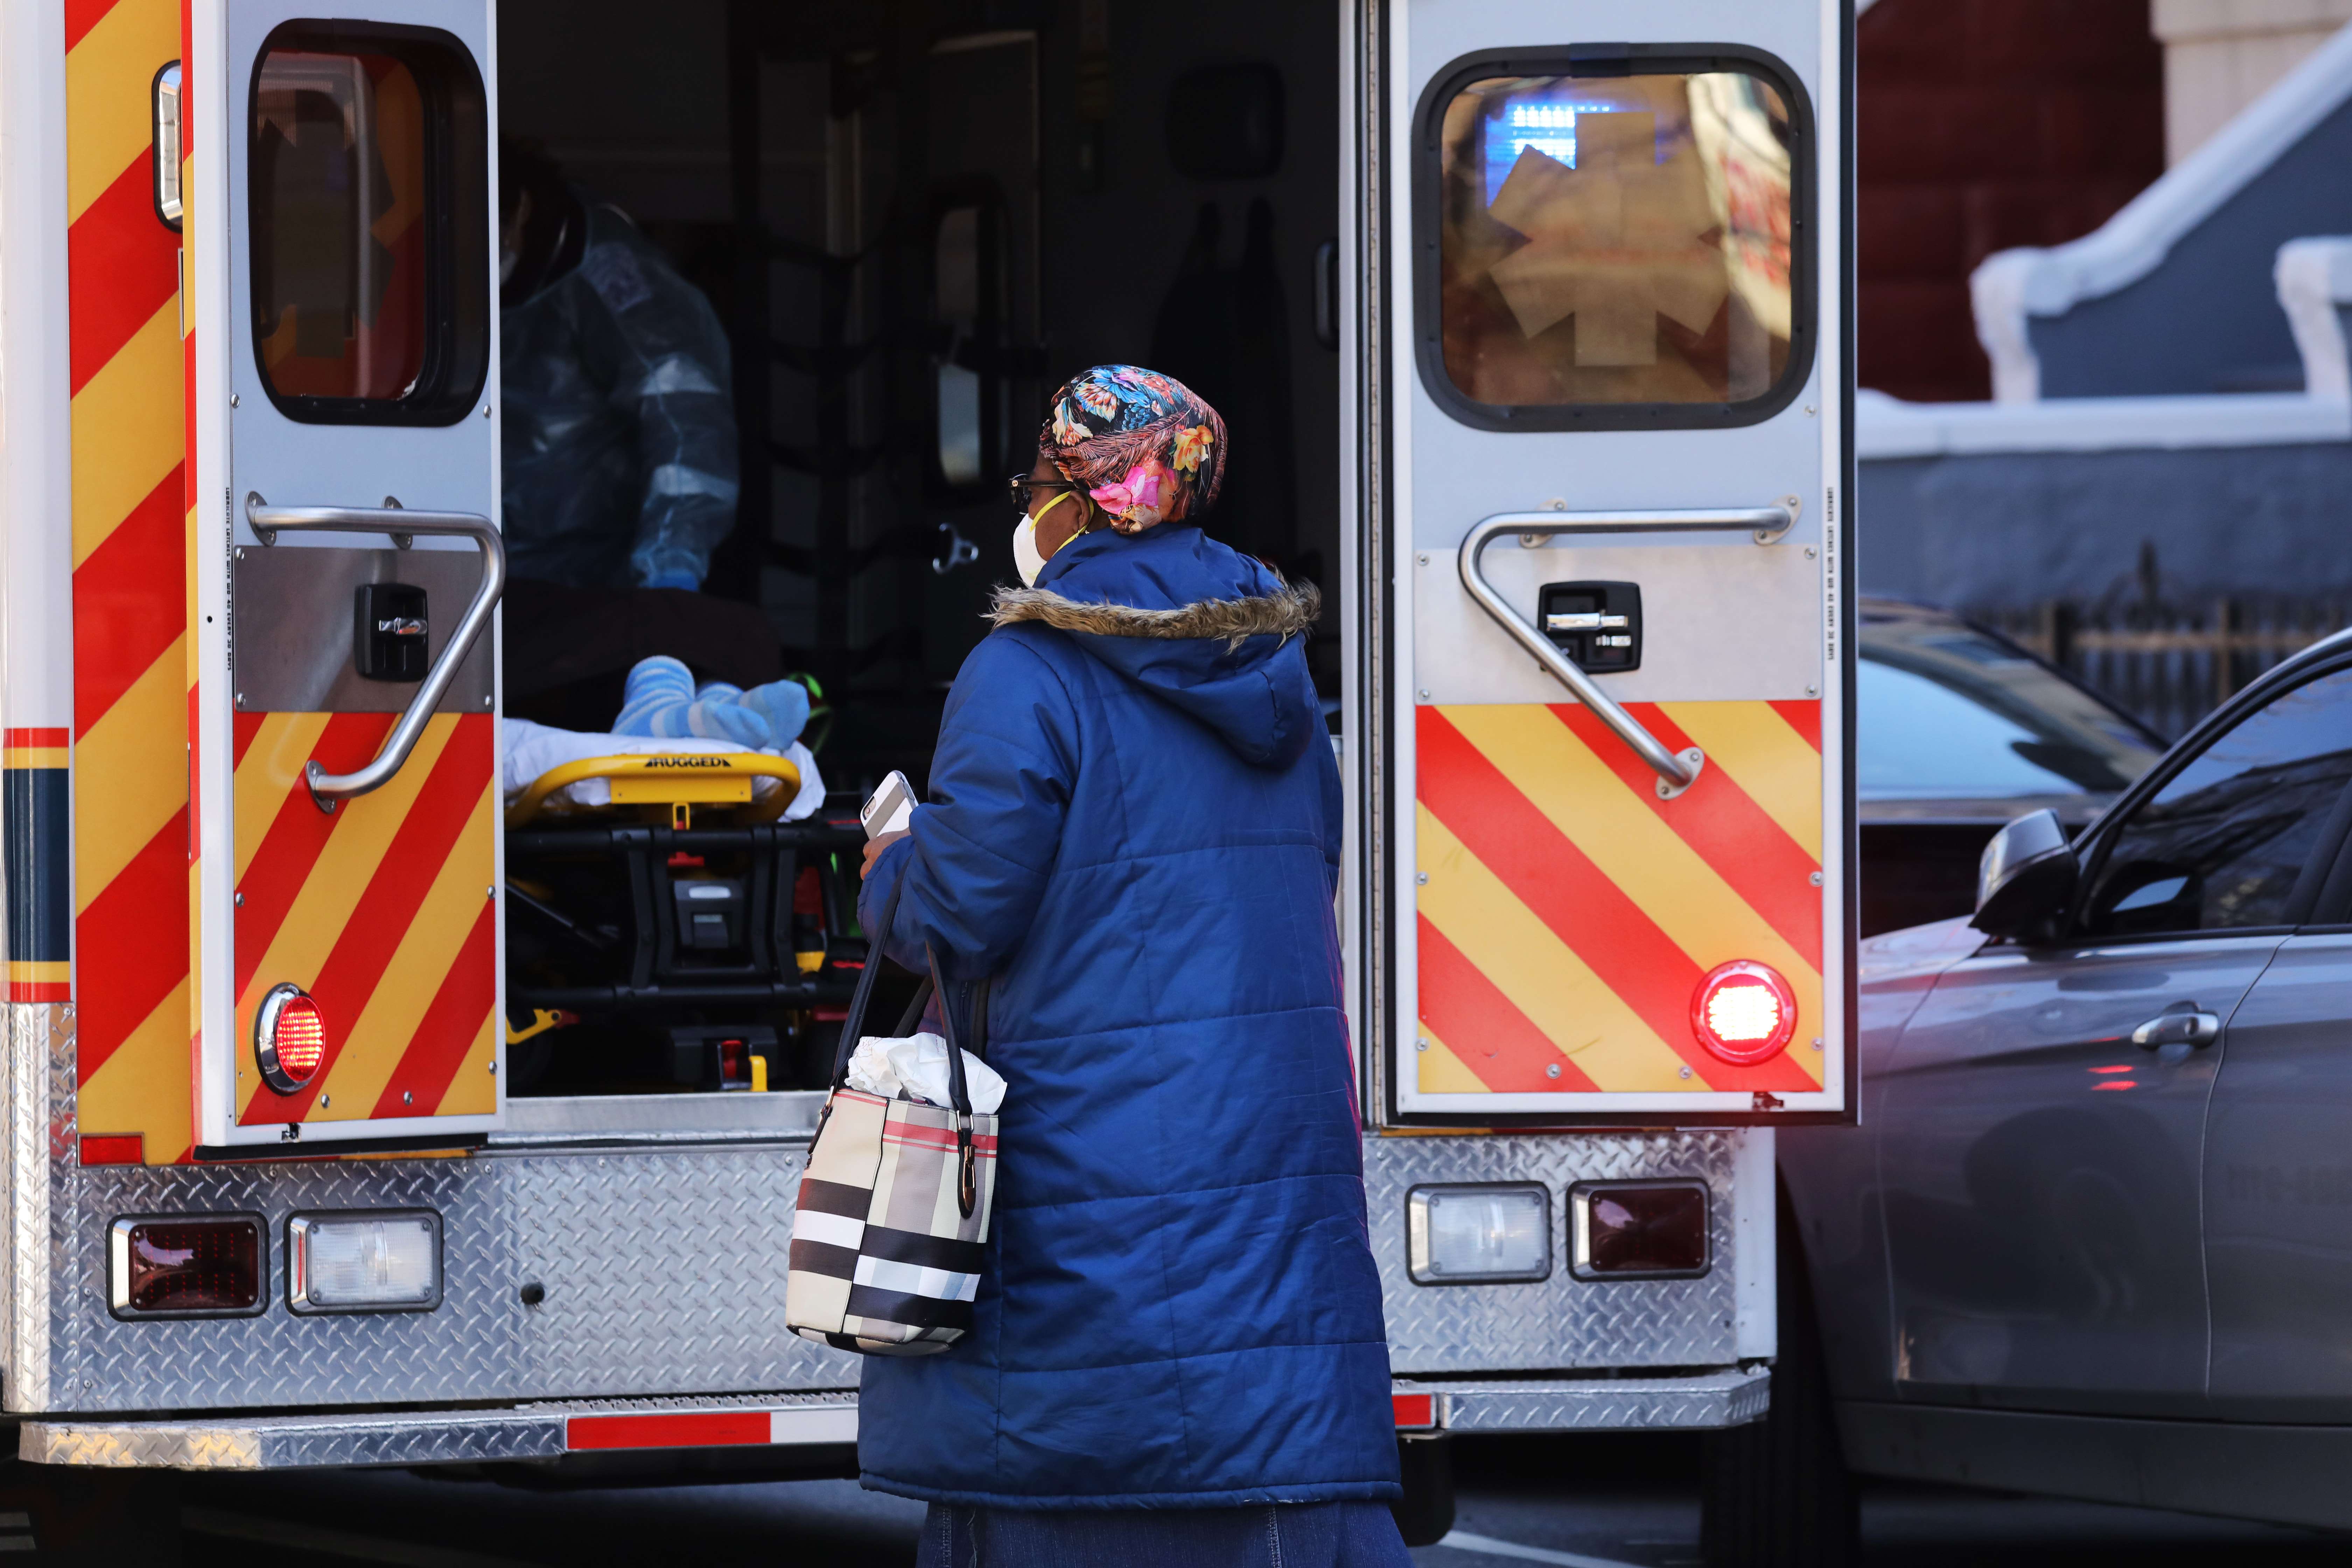 Un pariente se encuentra cerca de un paciente que fue llevado en una ambulancia el 11 de abril de 2020 en el distrito de Brooklyn de la ciudad de Nueva York. (Foto Prensa Libre: AFP)